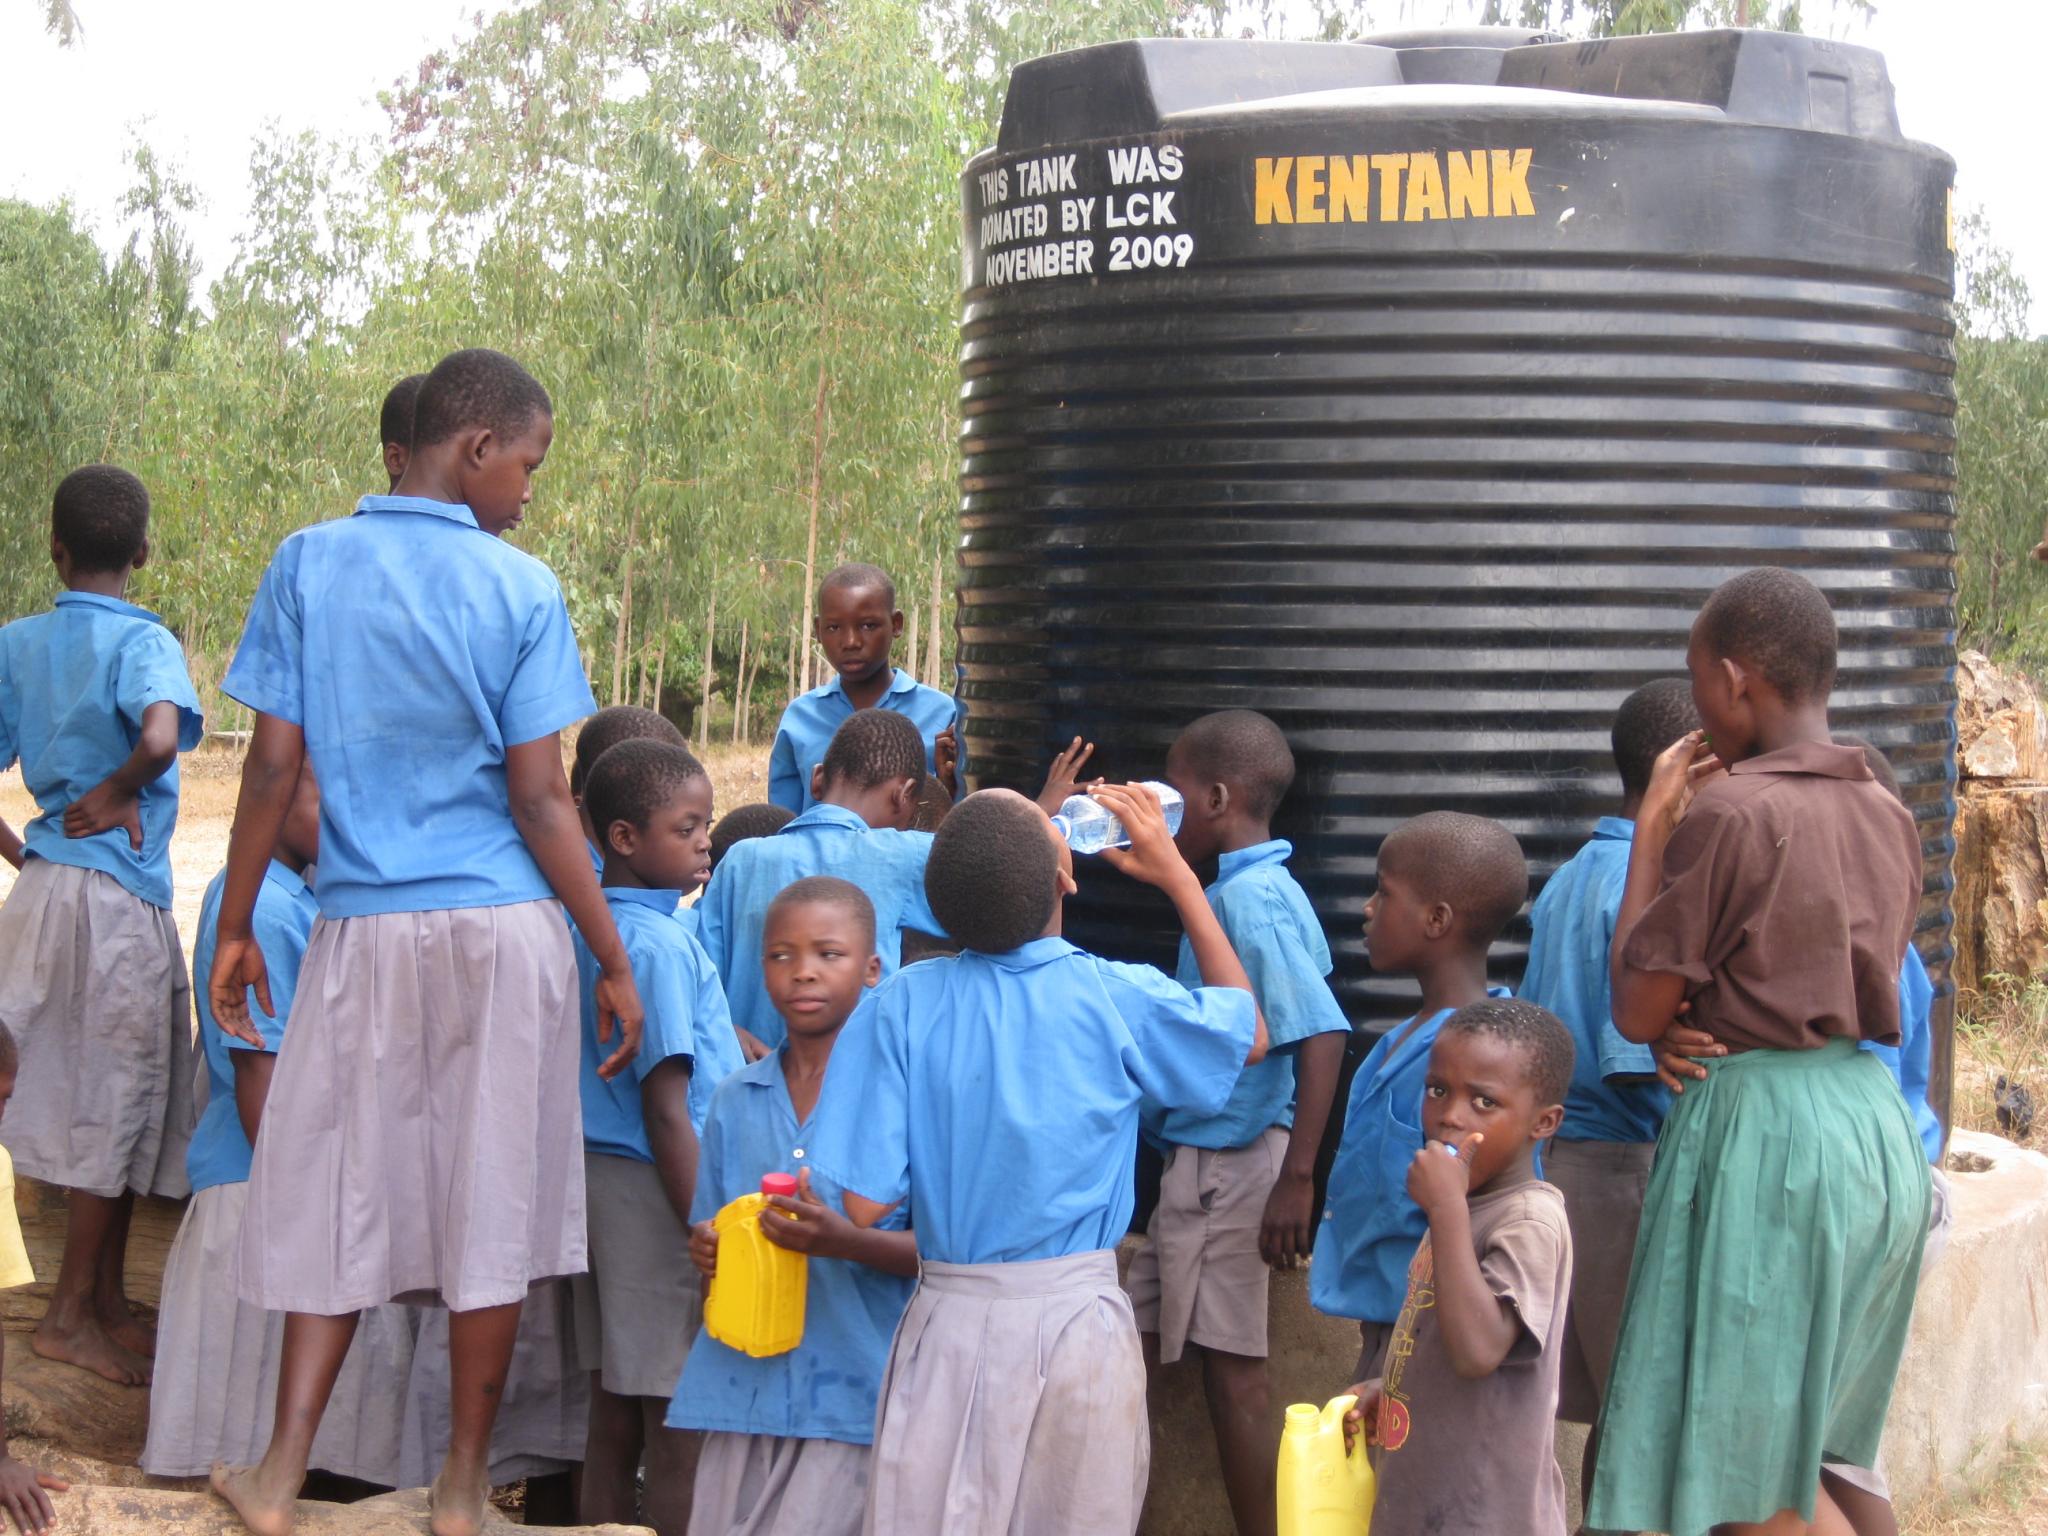 Watertank in Kenya